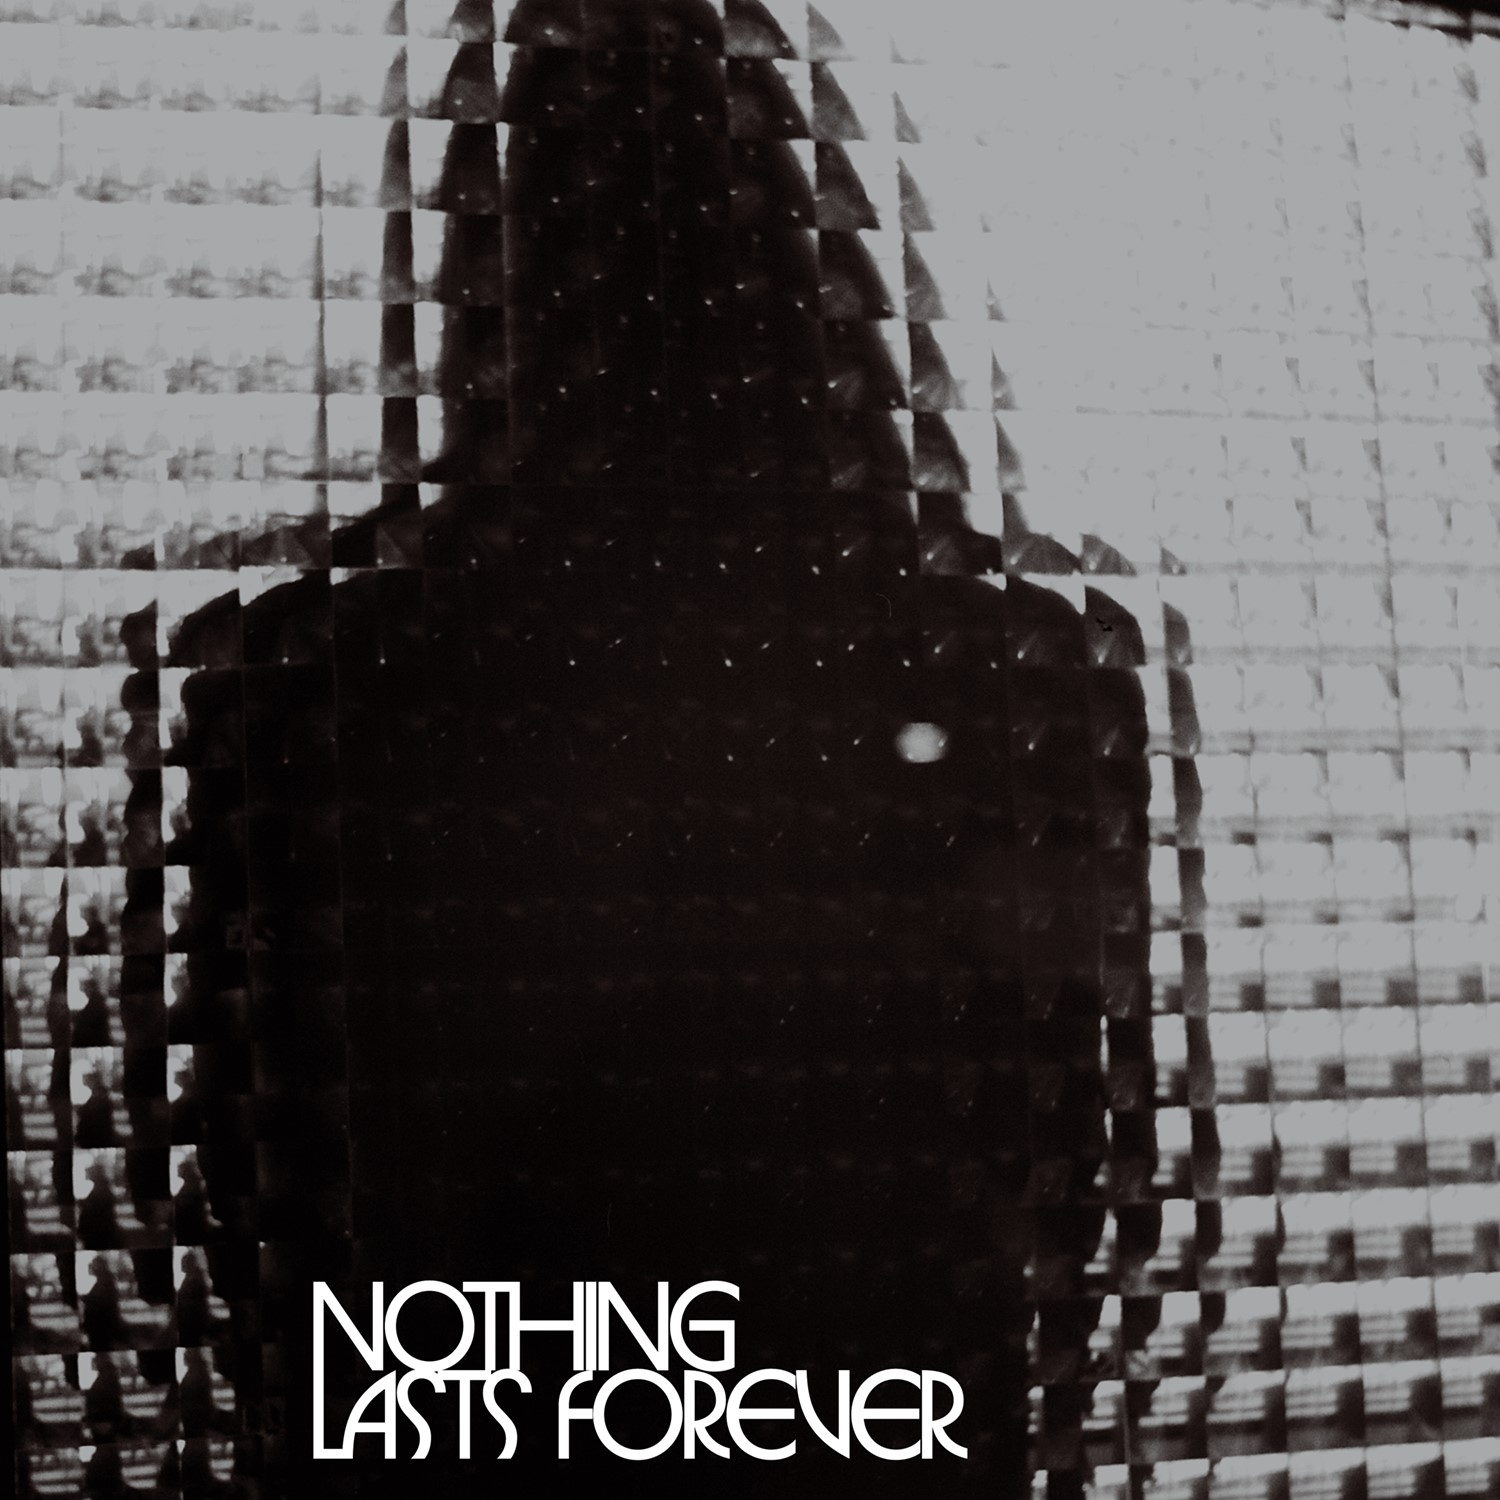 Teenage Fanclub - Nothing Lasts Forever [Silver/Black Vinyl "PEAK" VINYL + signed print] - New LP